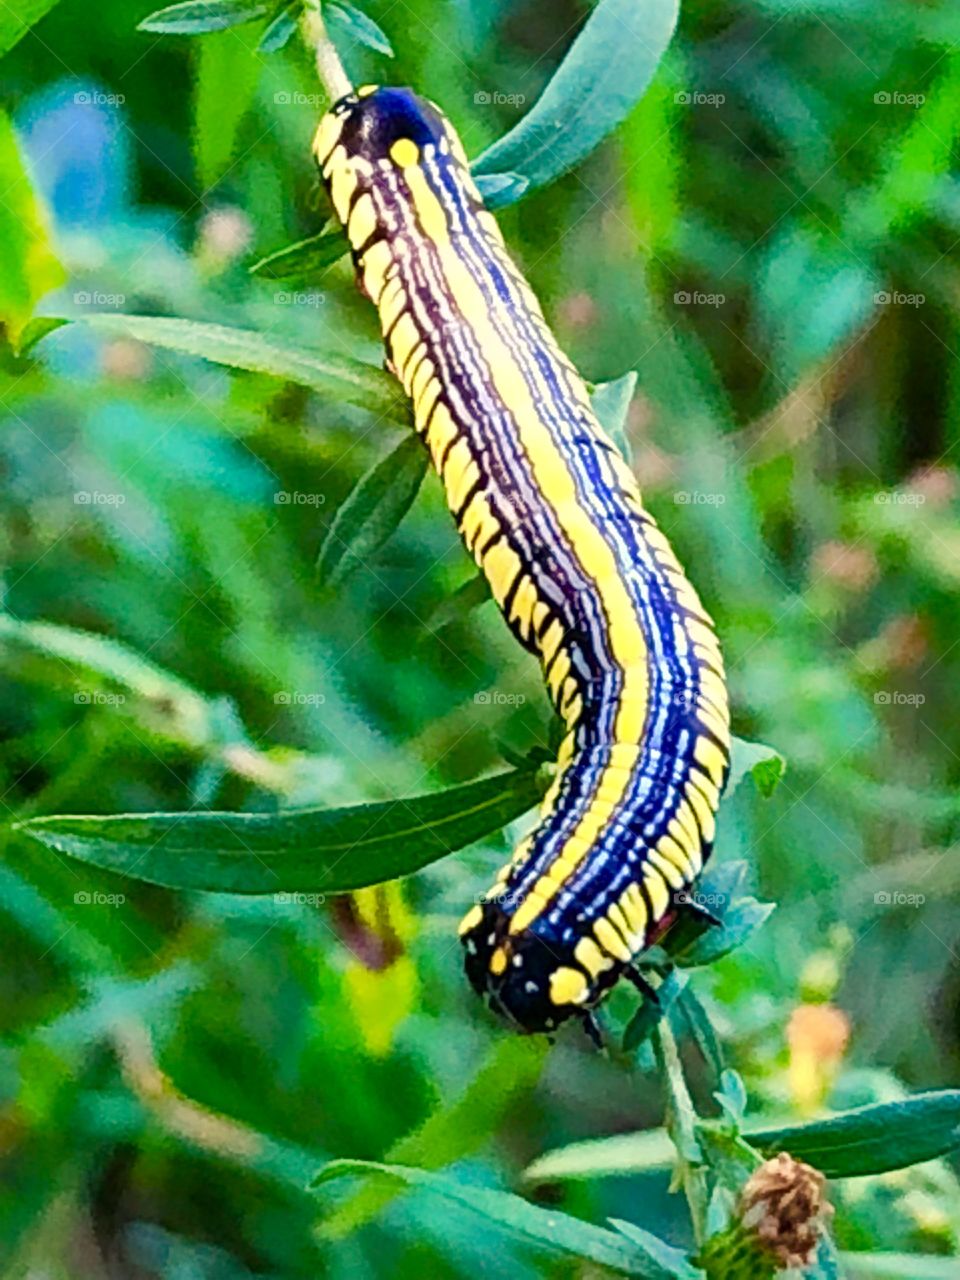 Gorgeous caterpillar